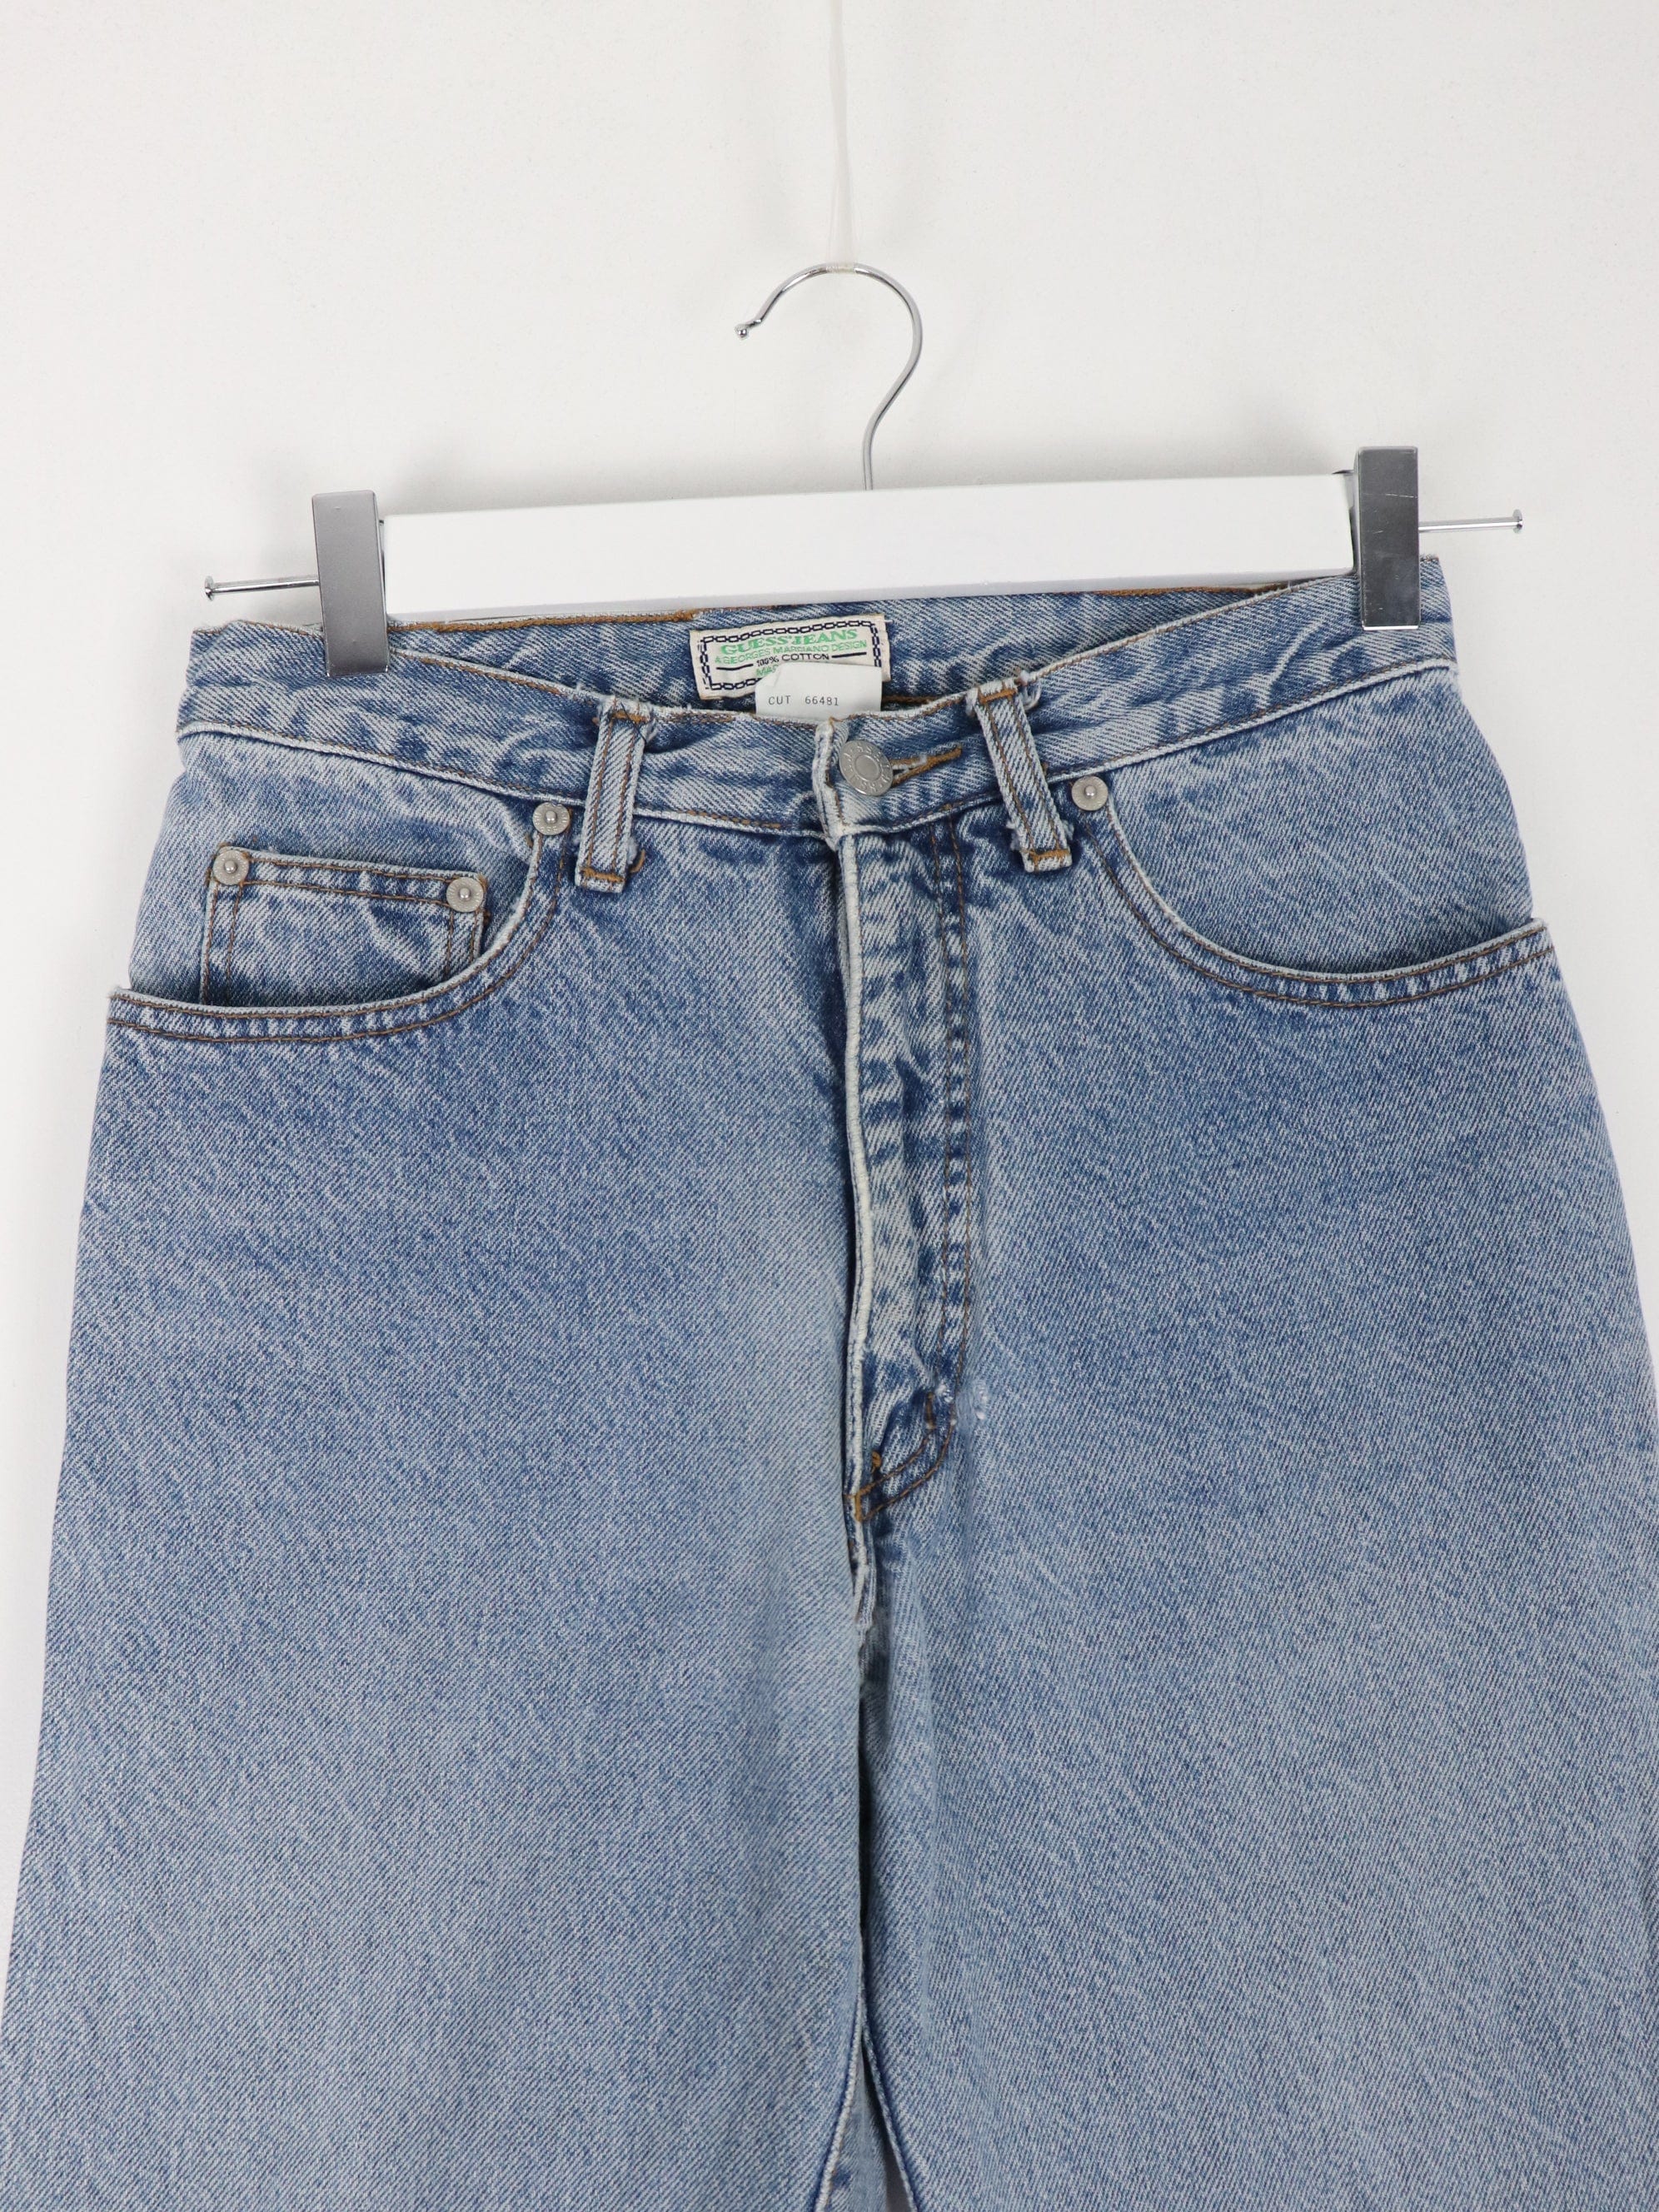 Vintage GUESS JEANS Women Beige Pants/lowwaist Pants/casual Cotton